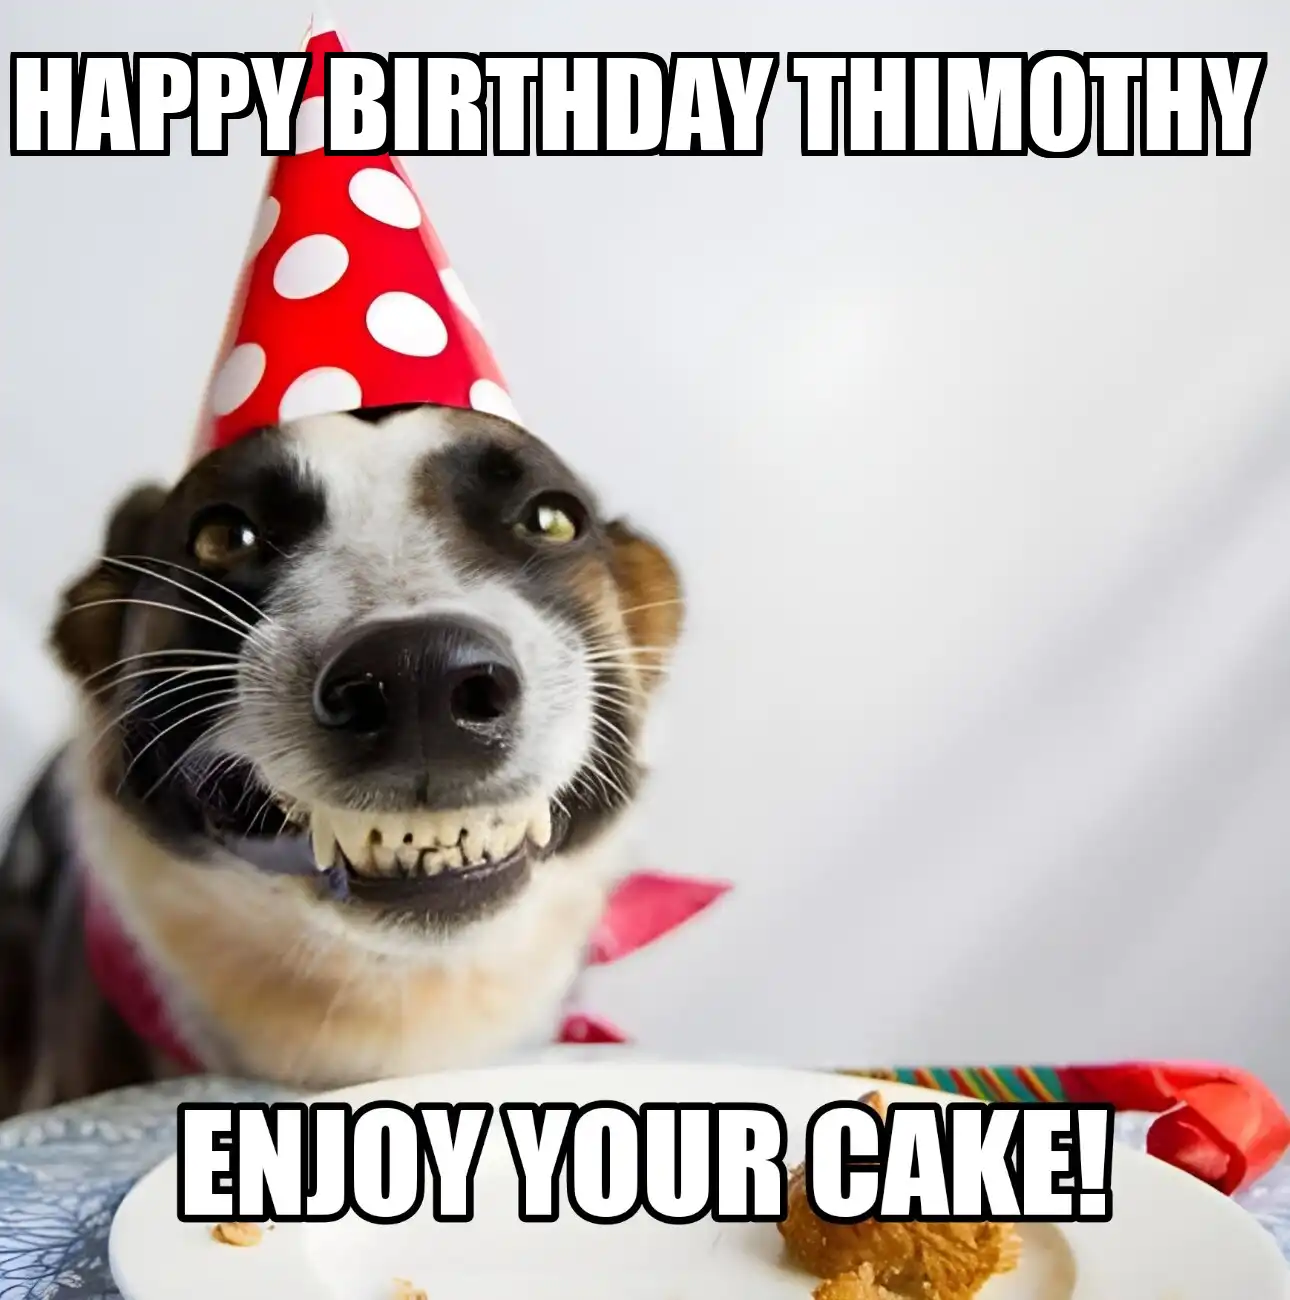 Happy Birthday Thimothy Enjoy Your Cake Dog Meme